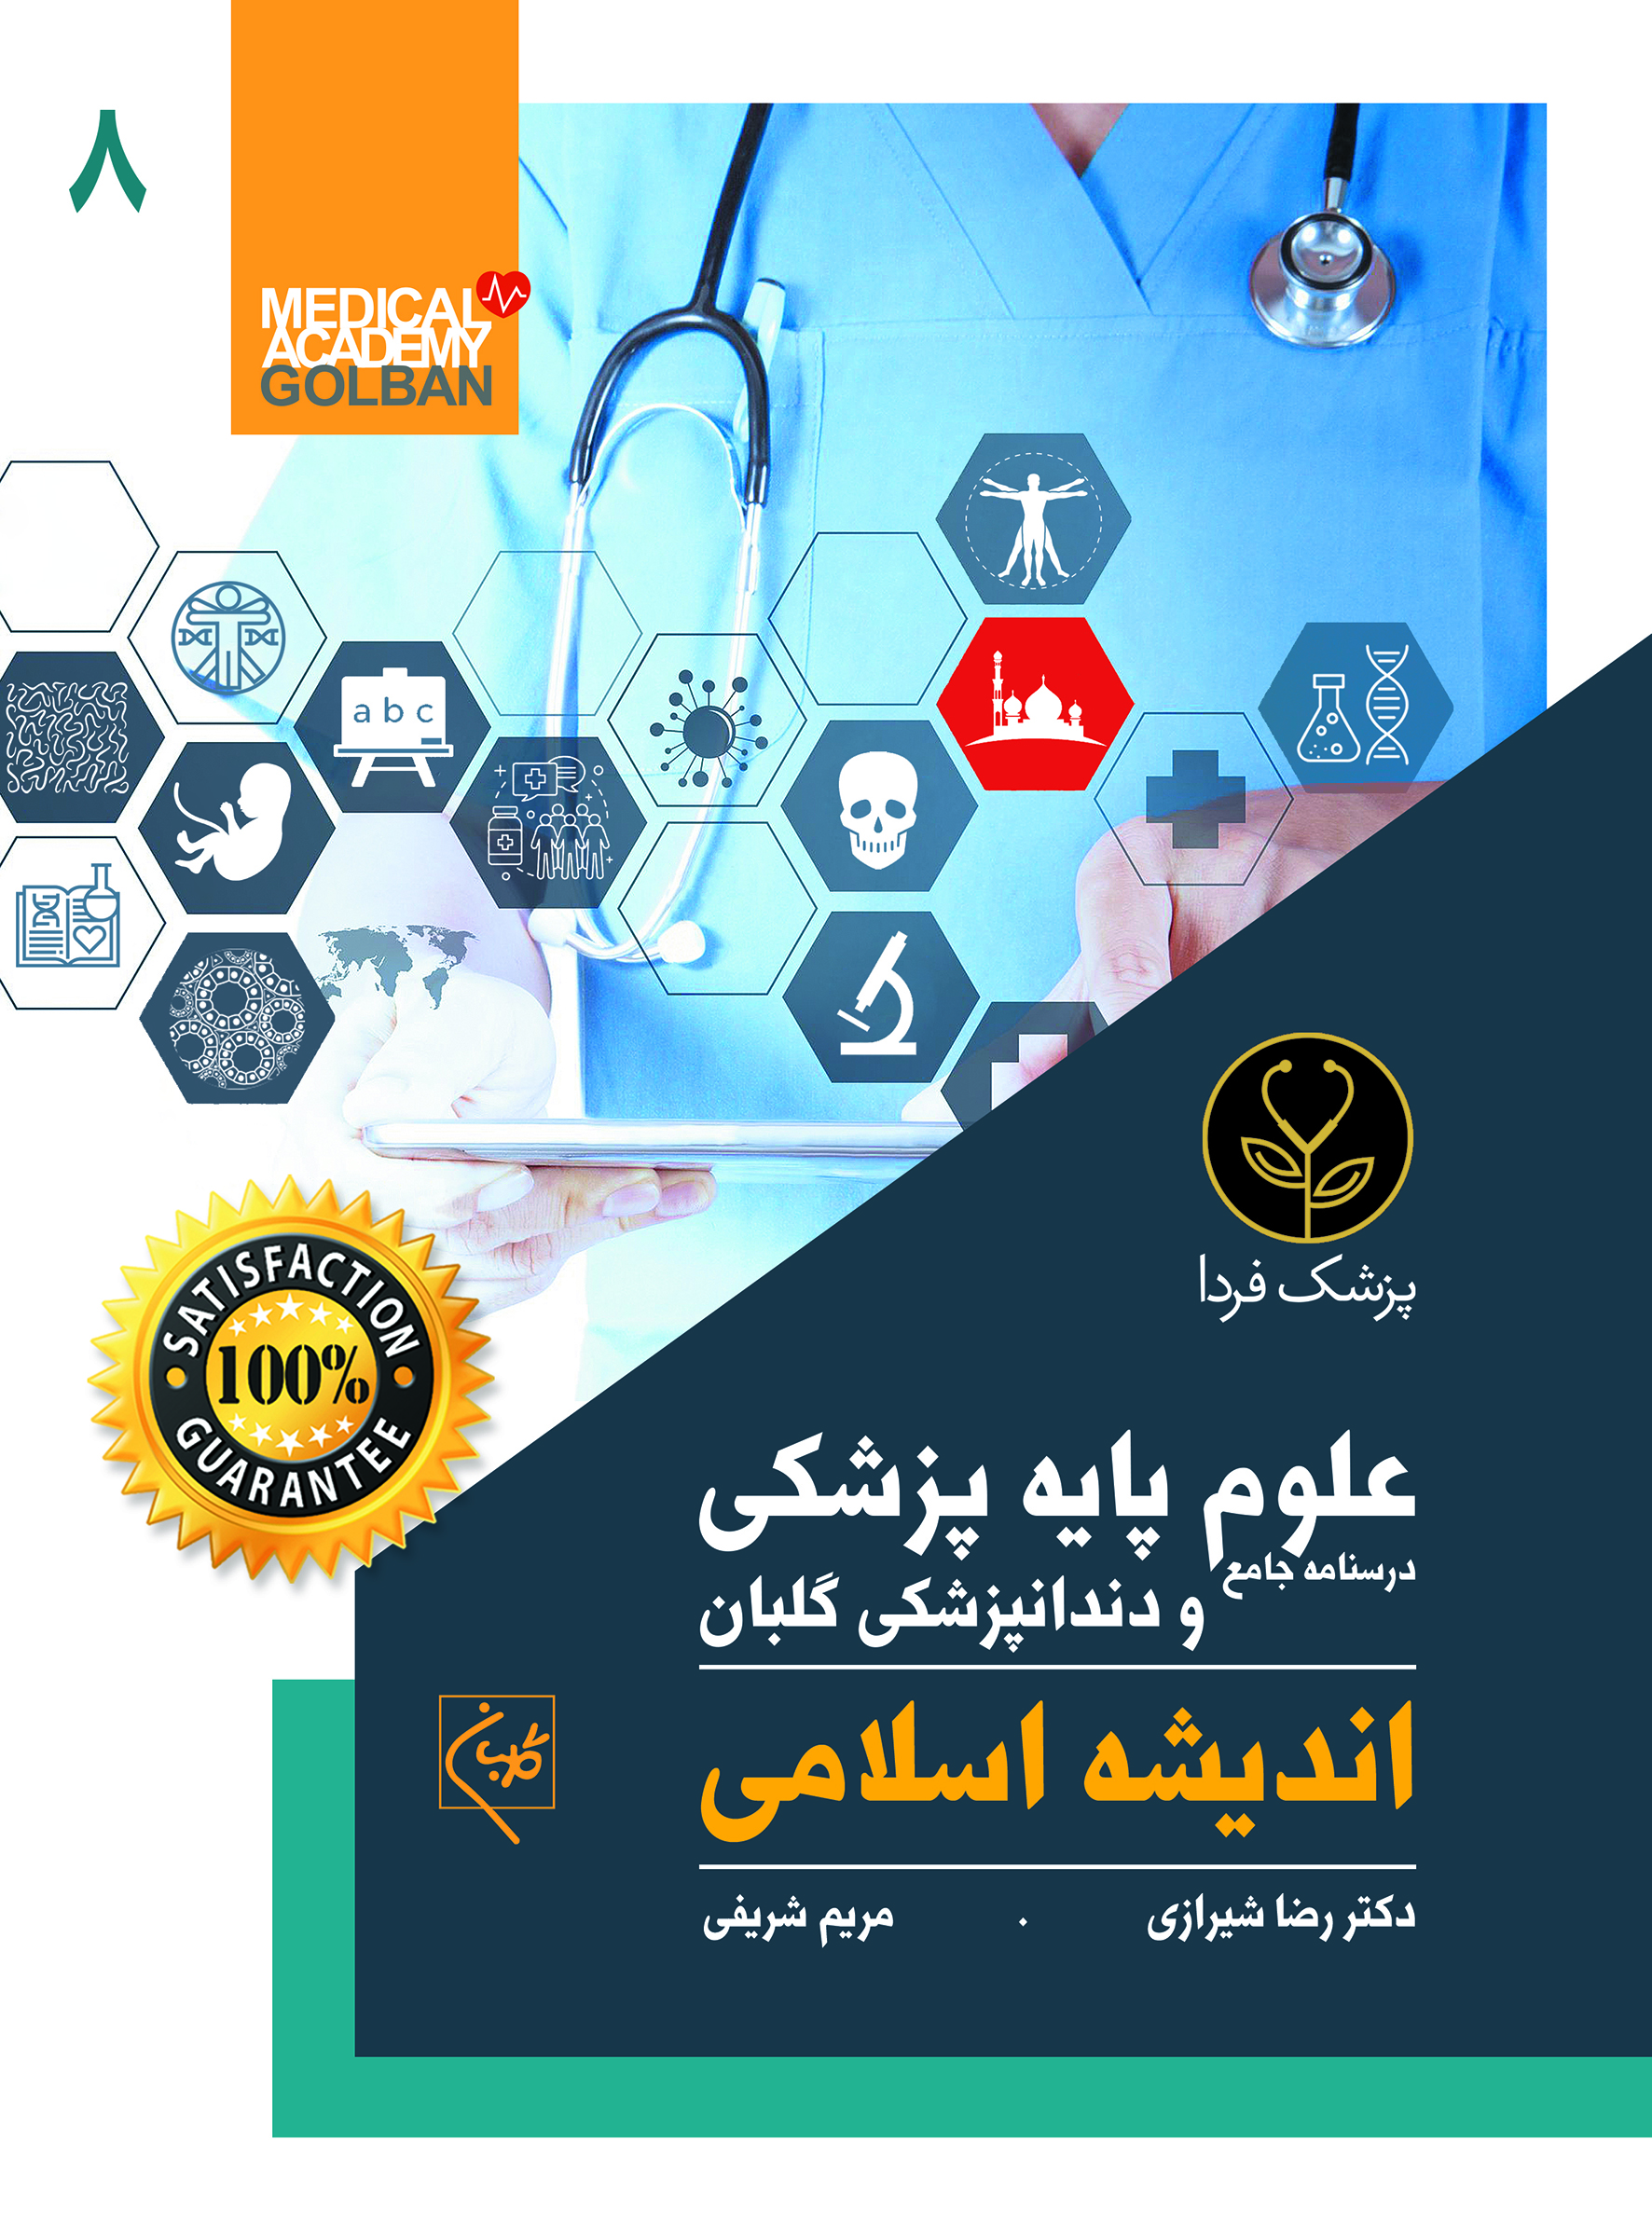 درسنامه جامع علوم پایه پزشکی و دندانپزشکی اندیشه اسلامی(8)